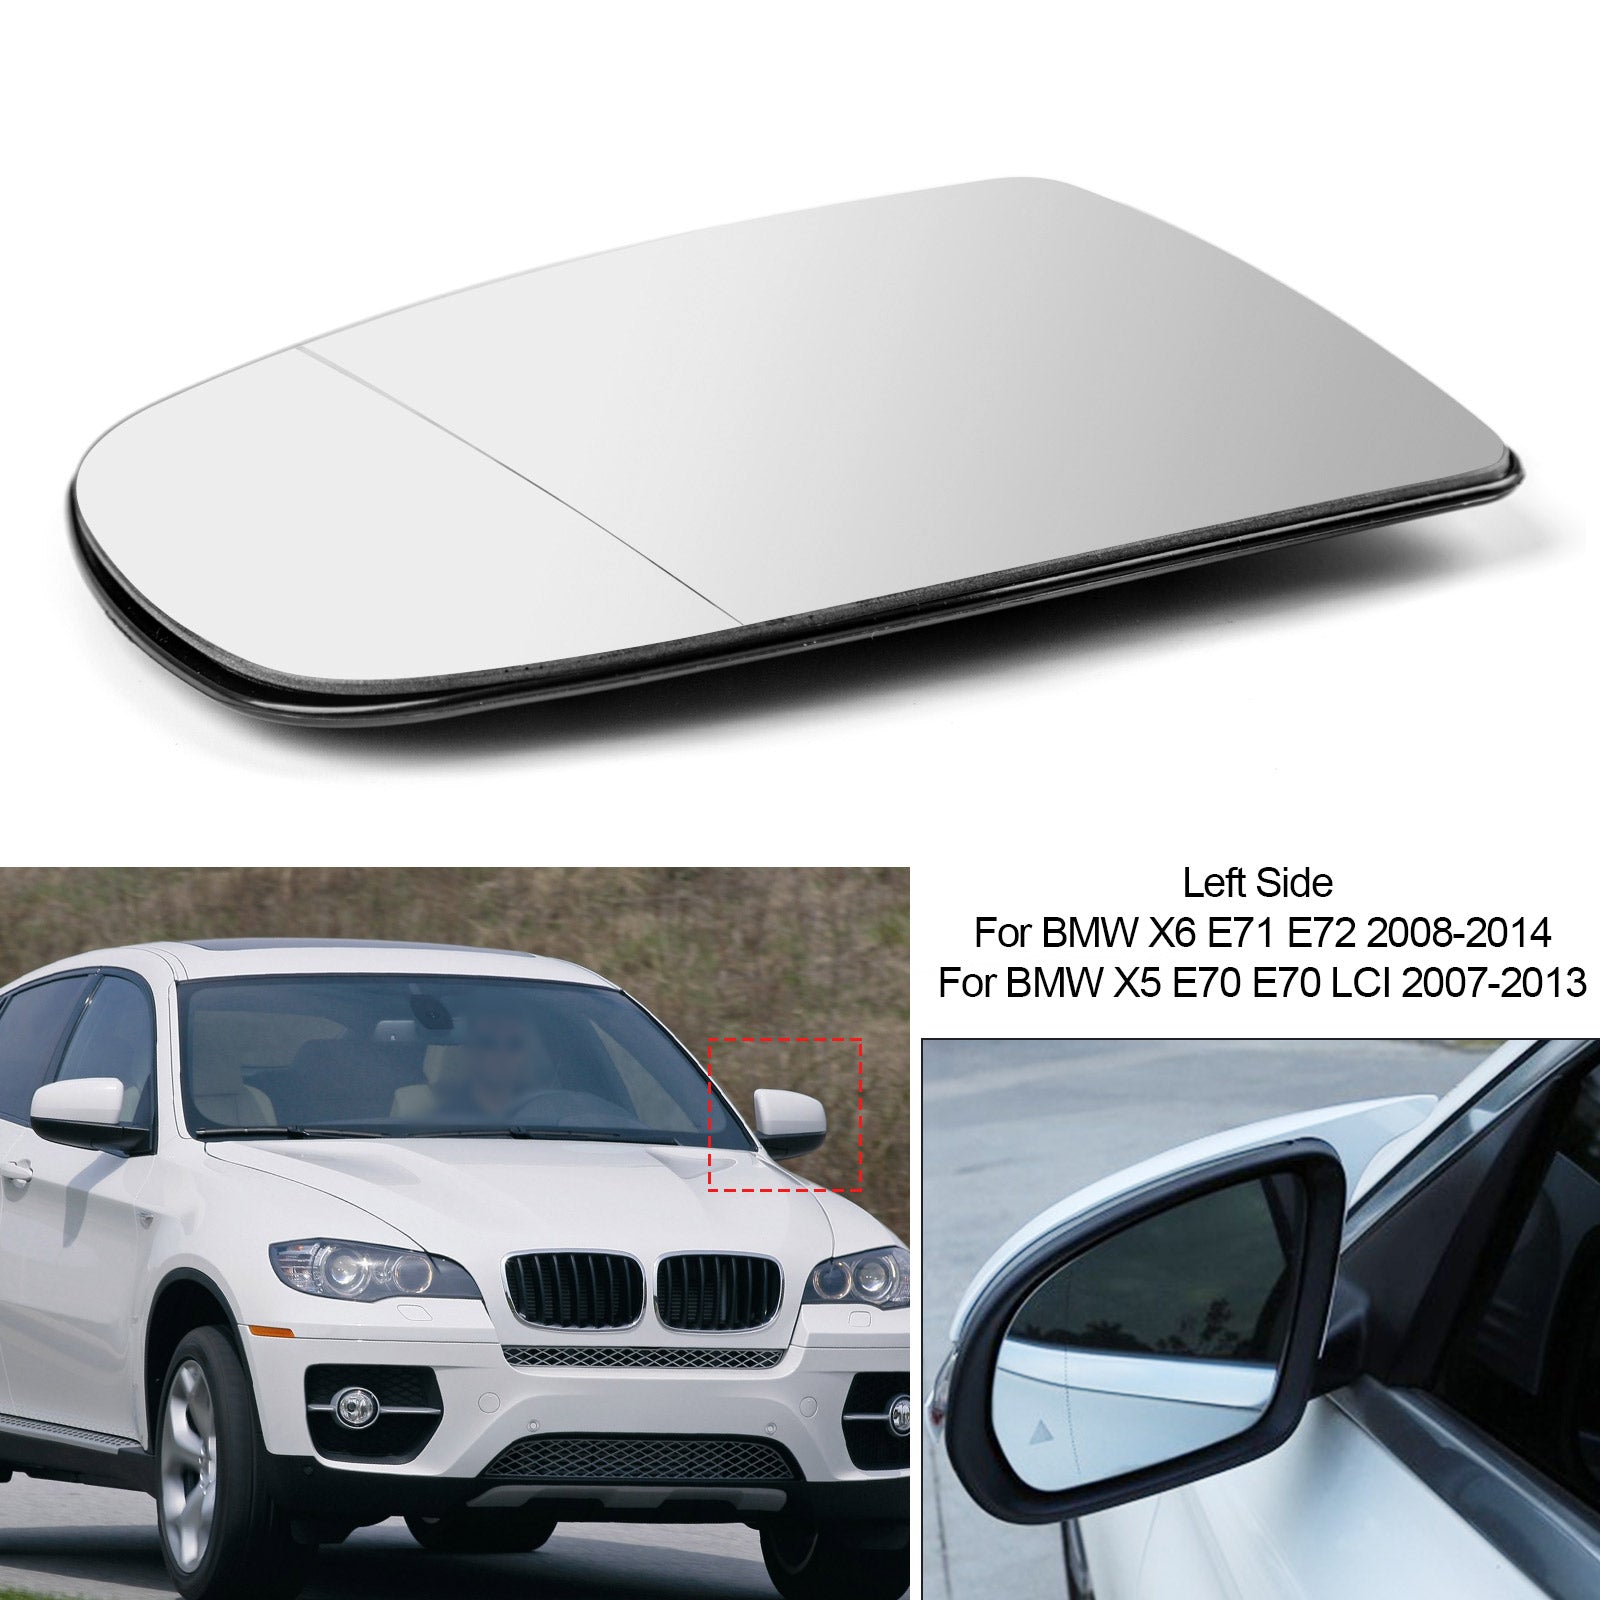 Specchietto retrovisore sinistro riscaldato in vetro bianco per BMW X5 X6 E70 E71 E72 2008-2014 Generico